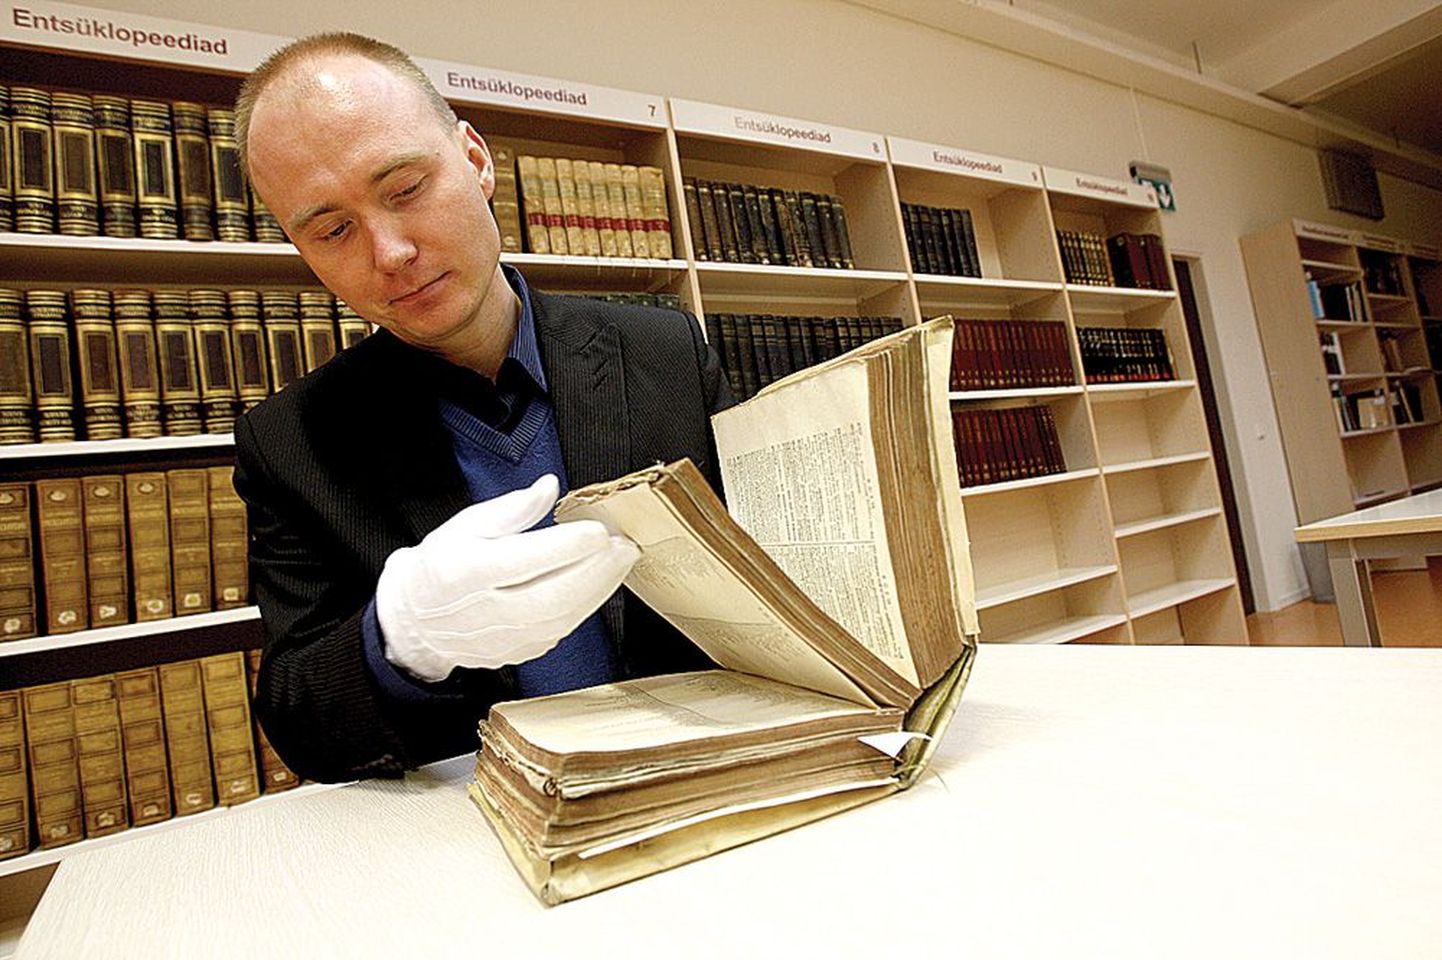 See raamatukogu majandusjuhi Martin Polikarpuse käes olev raamat on trükitud 1671. aastal pärgamendile, mis aga tahaks olla jahedas ja niiskes ruumis. Praeguses kuivas ja liigsoojas hoidlas kuivab raamat lõhki.